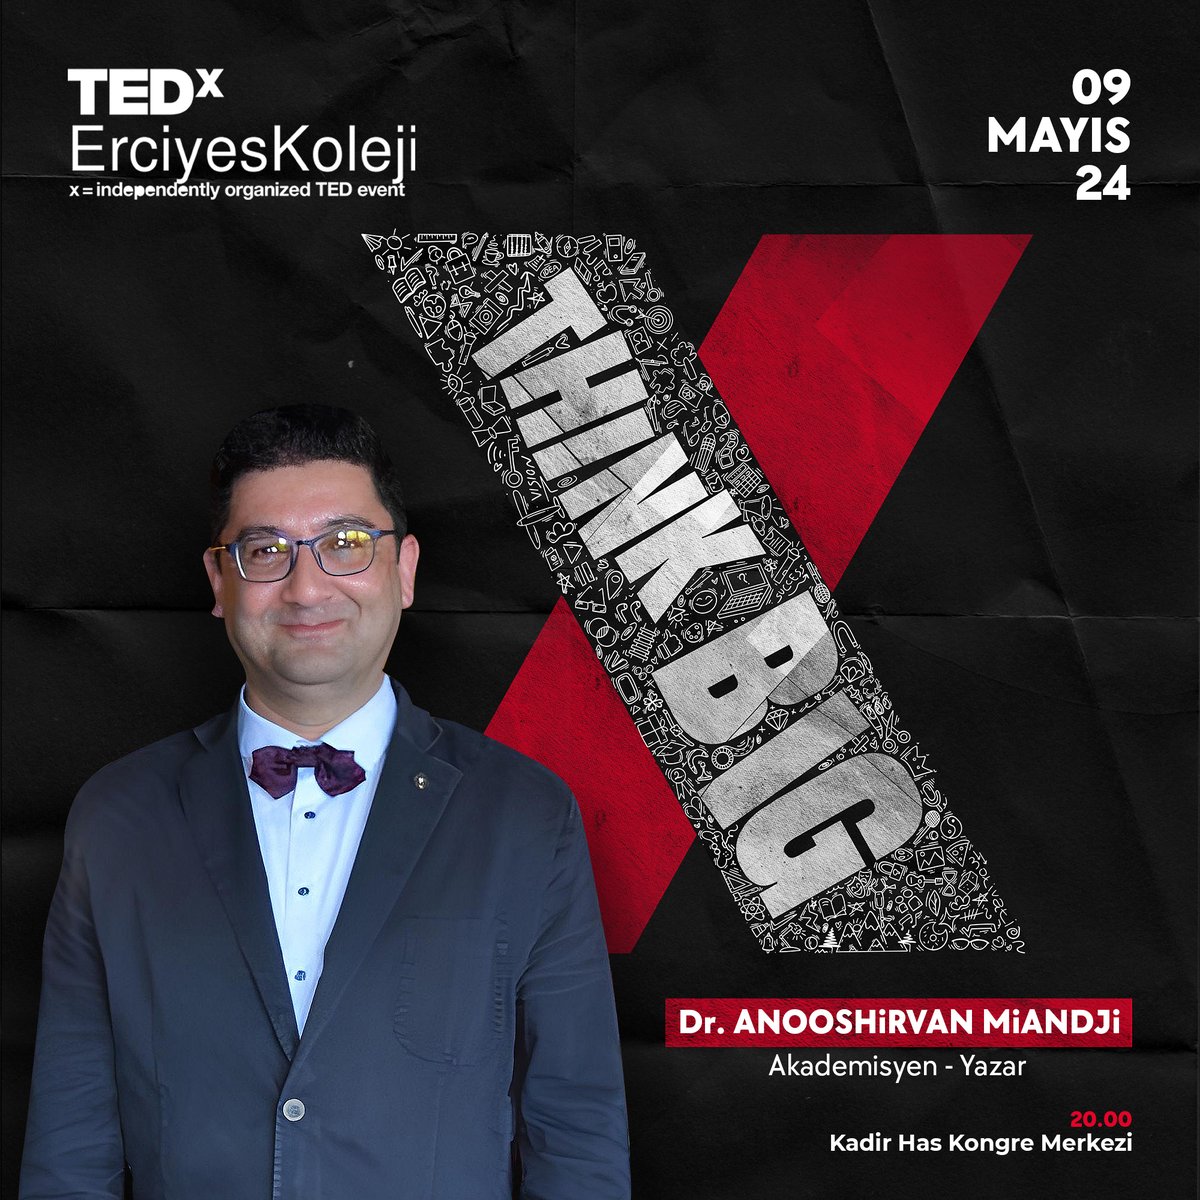 9 Mayıs'ta TEDx ErciyesKolejinde. 'Önce düşünceleri değiştireceğiz, sonra onlar diğer her şeyi.' @BilgiYayinevi @ErciyesKoleji #thinkbigthinkcritically #eleştireldüşünme